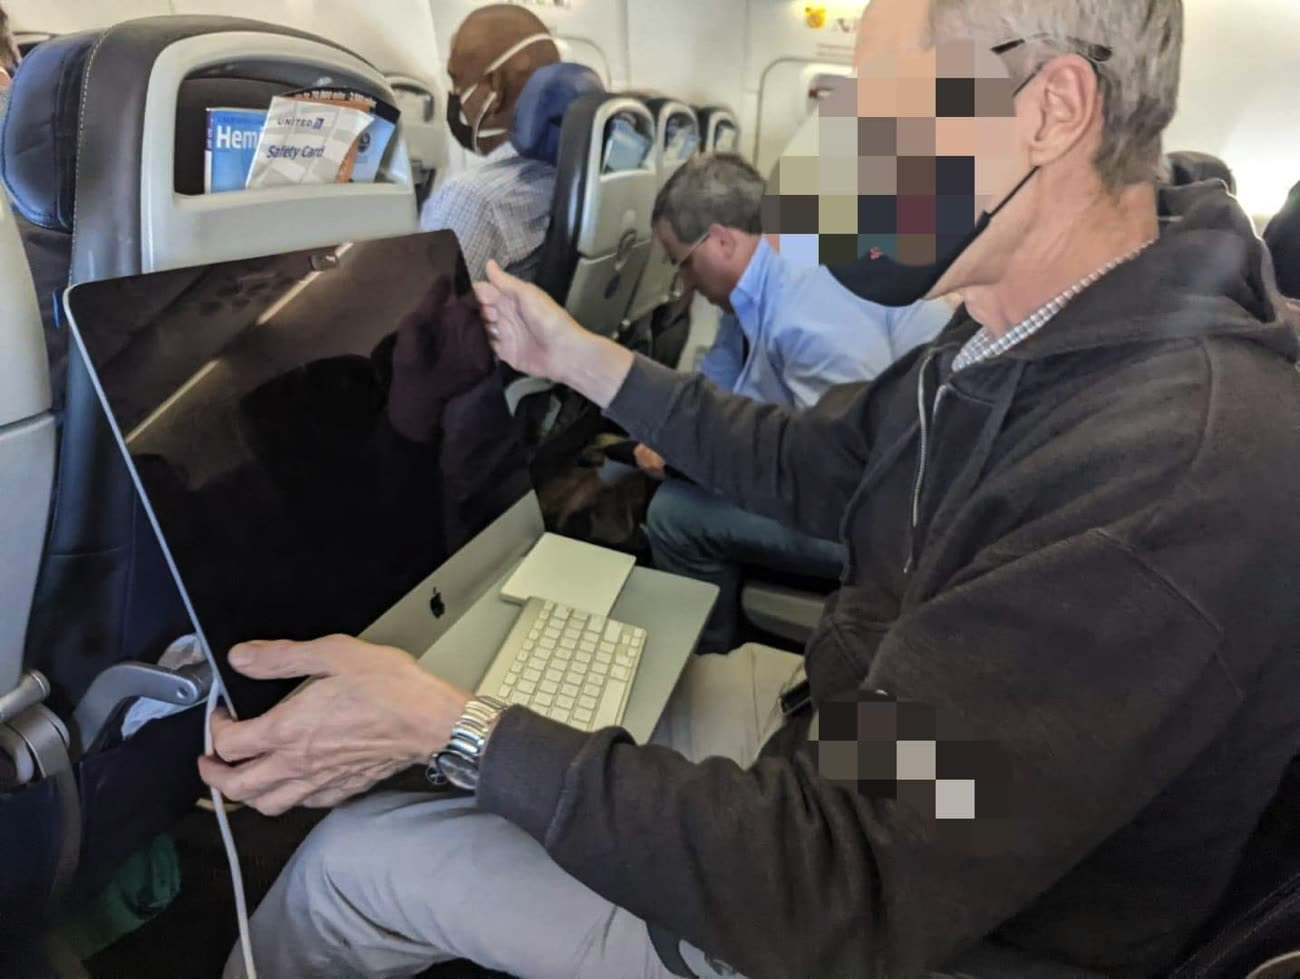 Après l’iMac dans le train, pourquoi pas un iMac dans l’avion ?